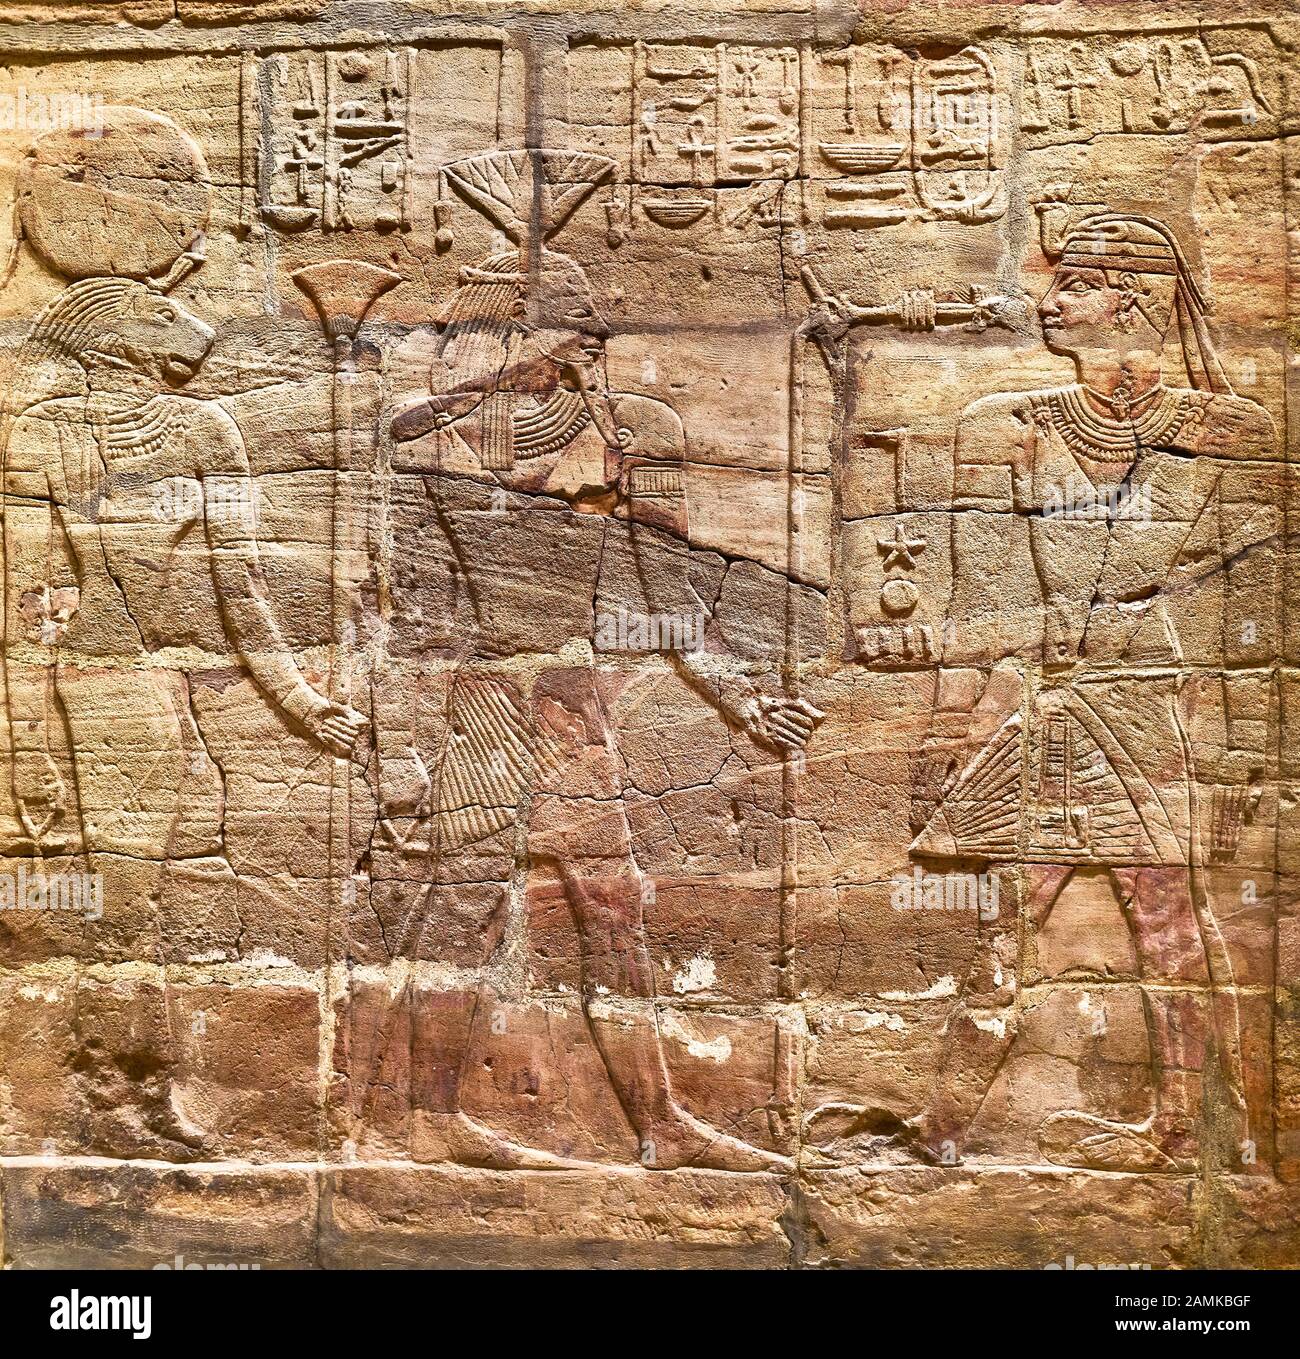 Parete nord del santuario all'antico egyption kingTaharqa nel museo Ashmolean all'università di Oxford, Inghilterra. Foto Stock